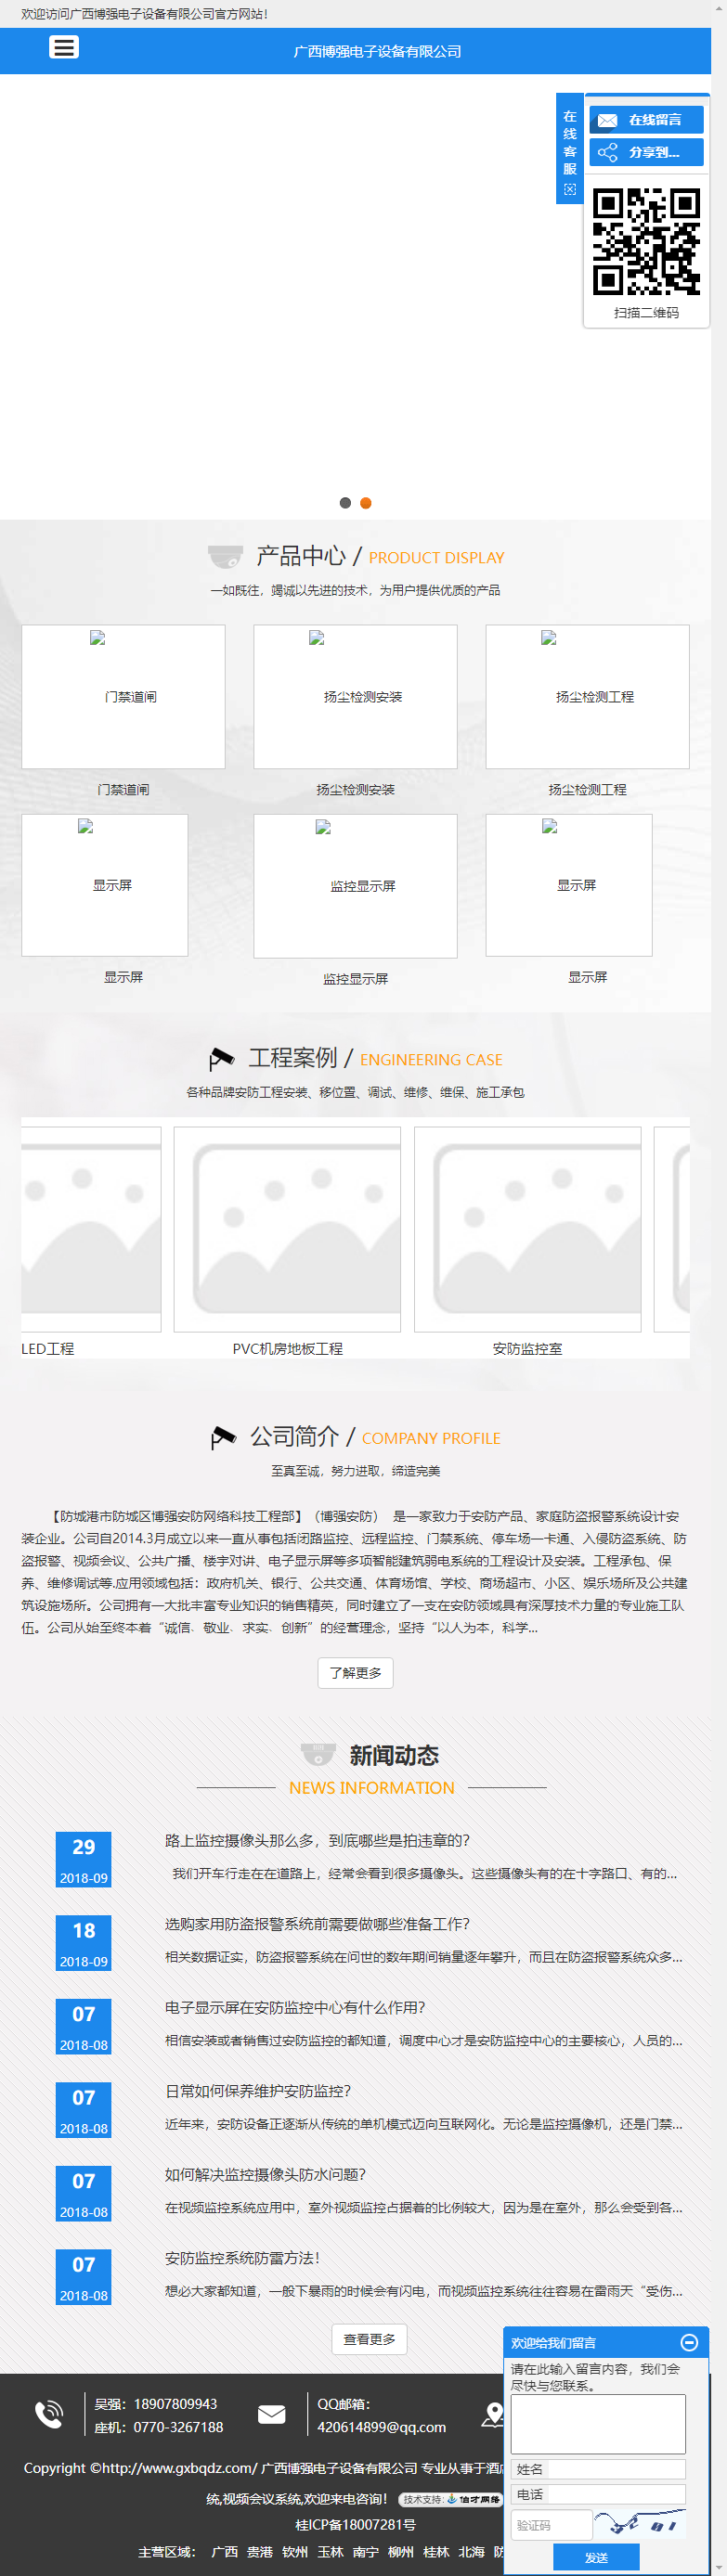 广西博强电子设备有限公司网站案例